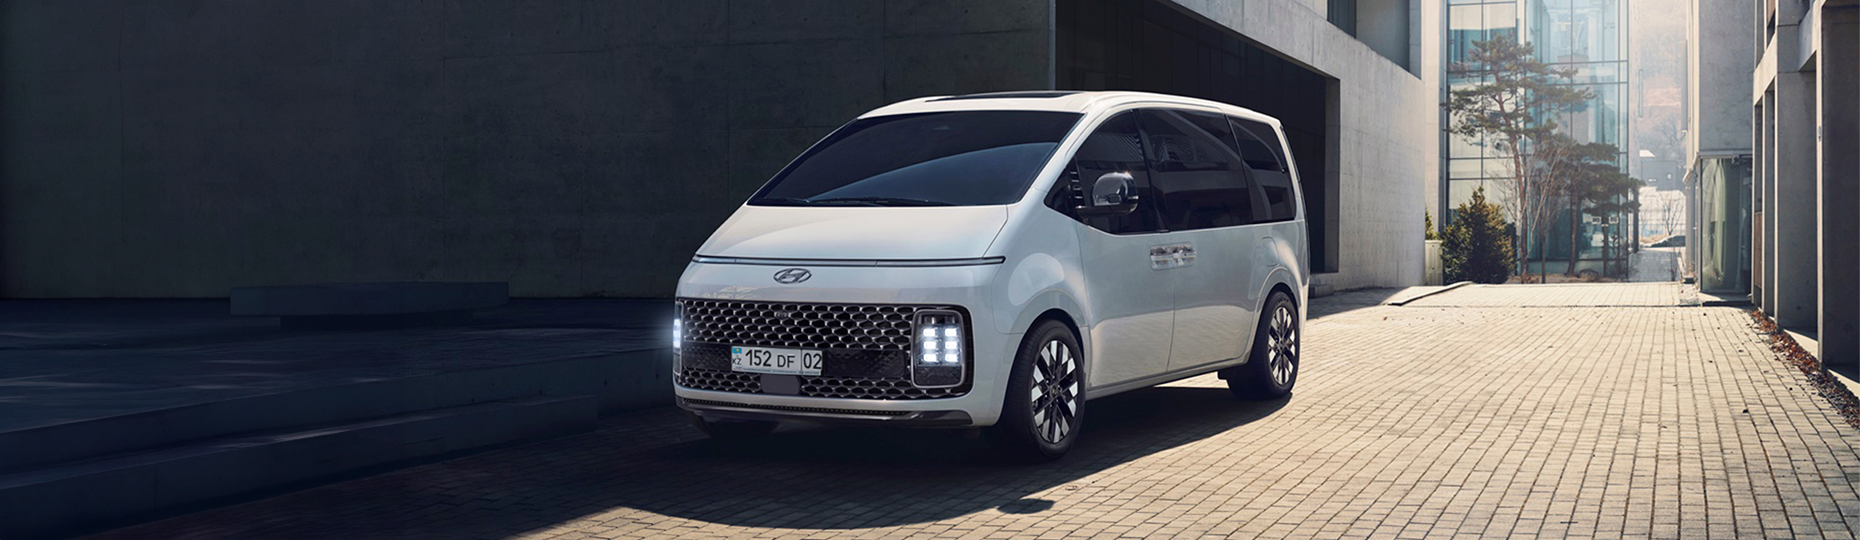 Жаңа Hyundai Staria жайлылығы | Астана қаласындағы ресми дилер